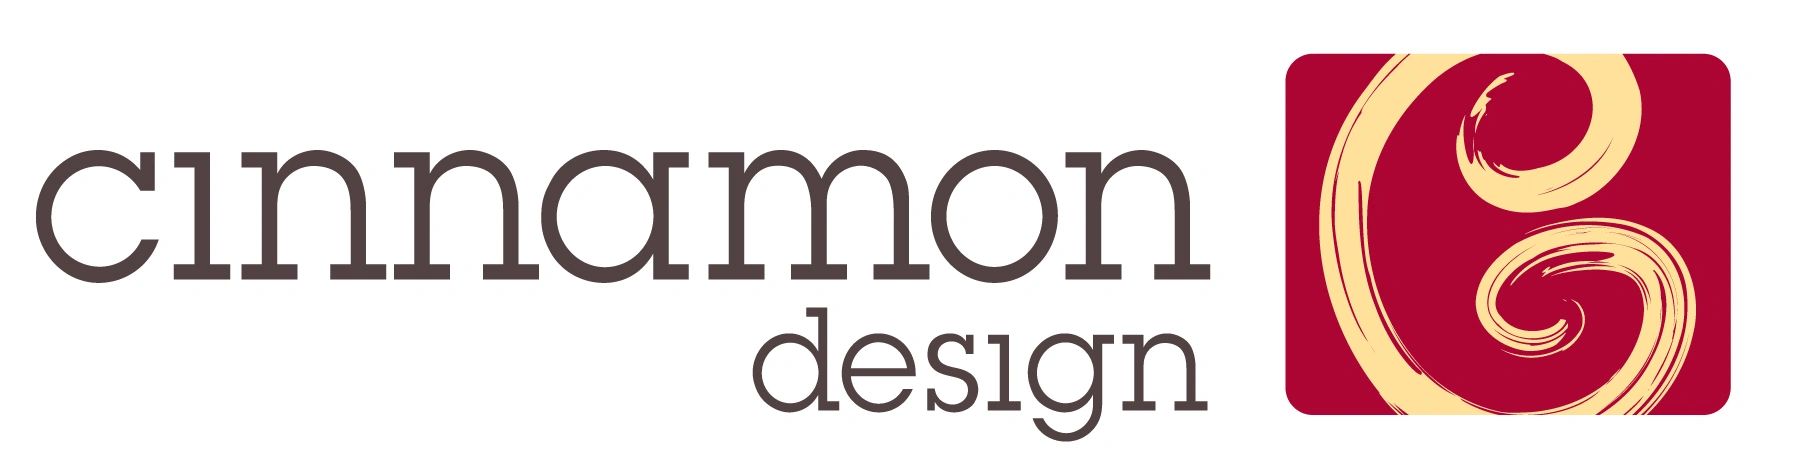 Cinnamon Design  Devmnt Inc